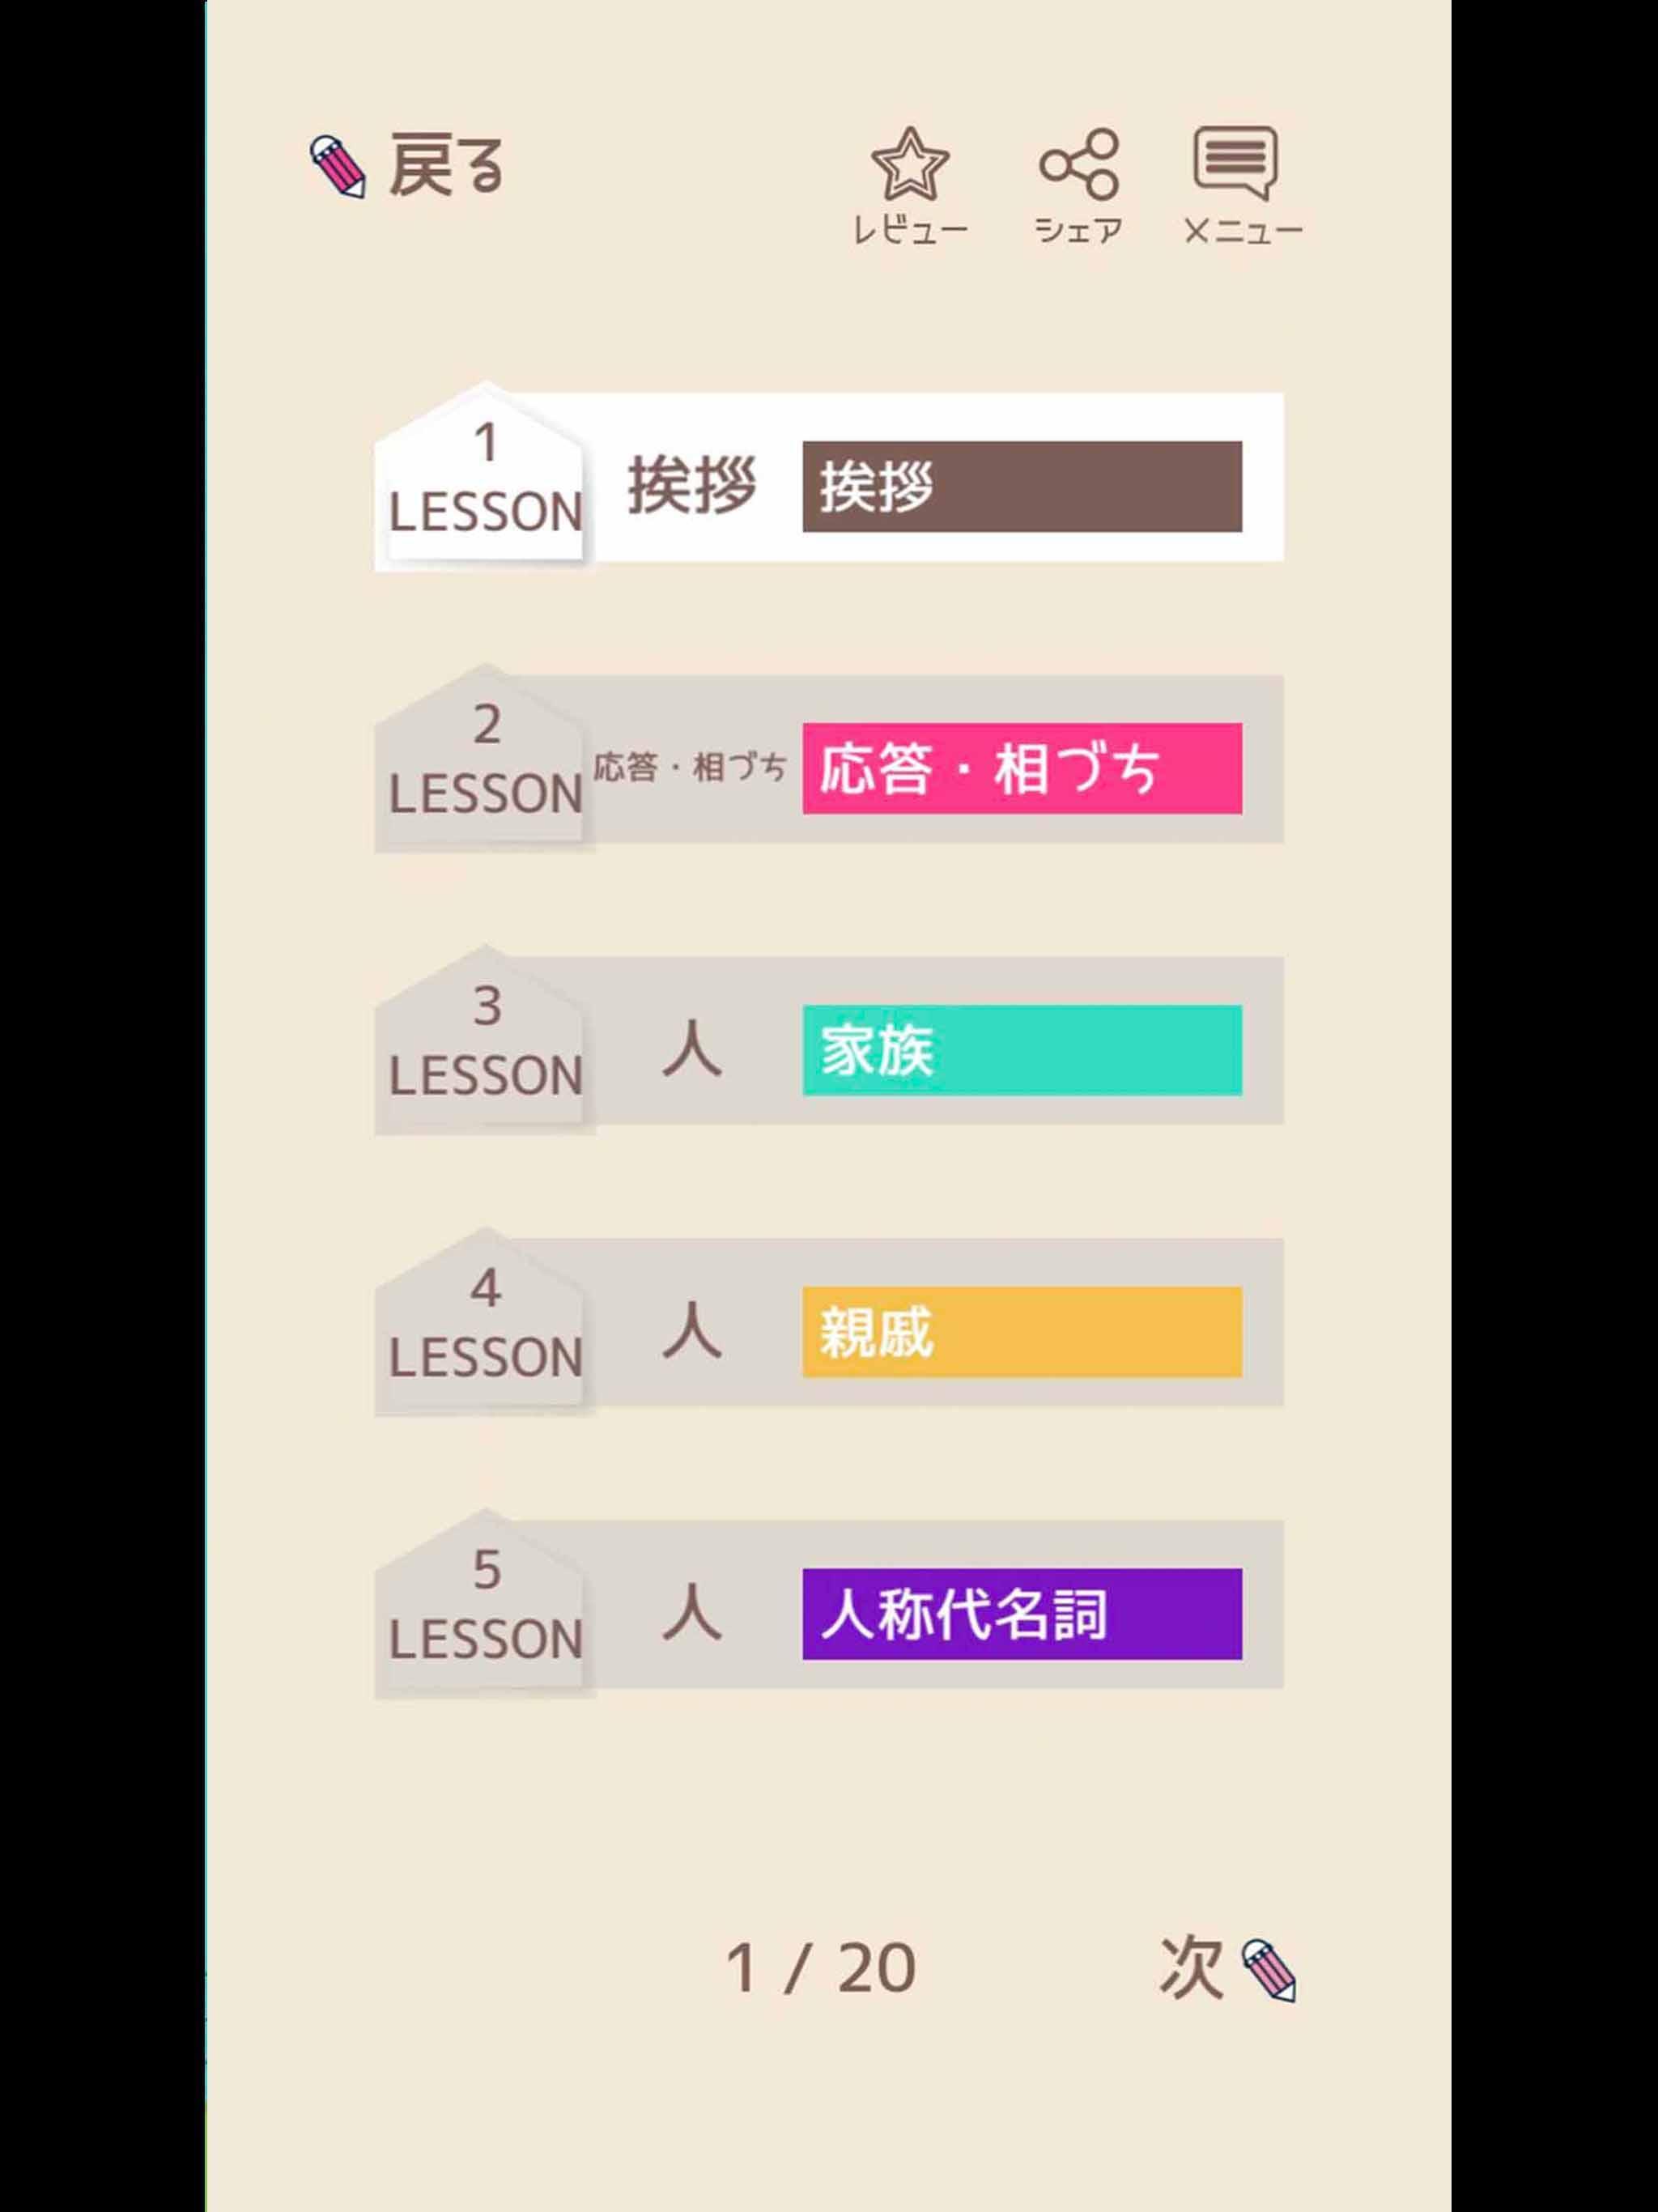 単語で覚える韓国語 ハングル学習アプリ 初心者も安心 無料で覚える人気のかんこくご勉強アプリ For Android Apk Download